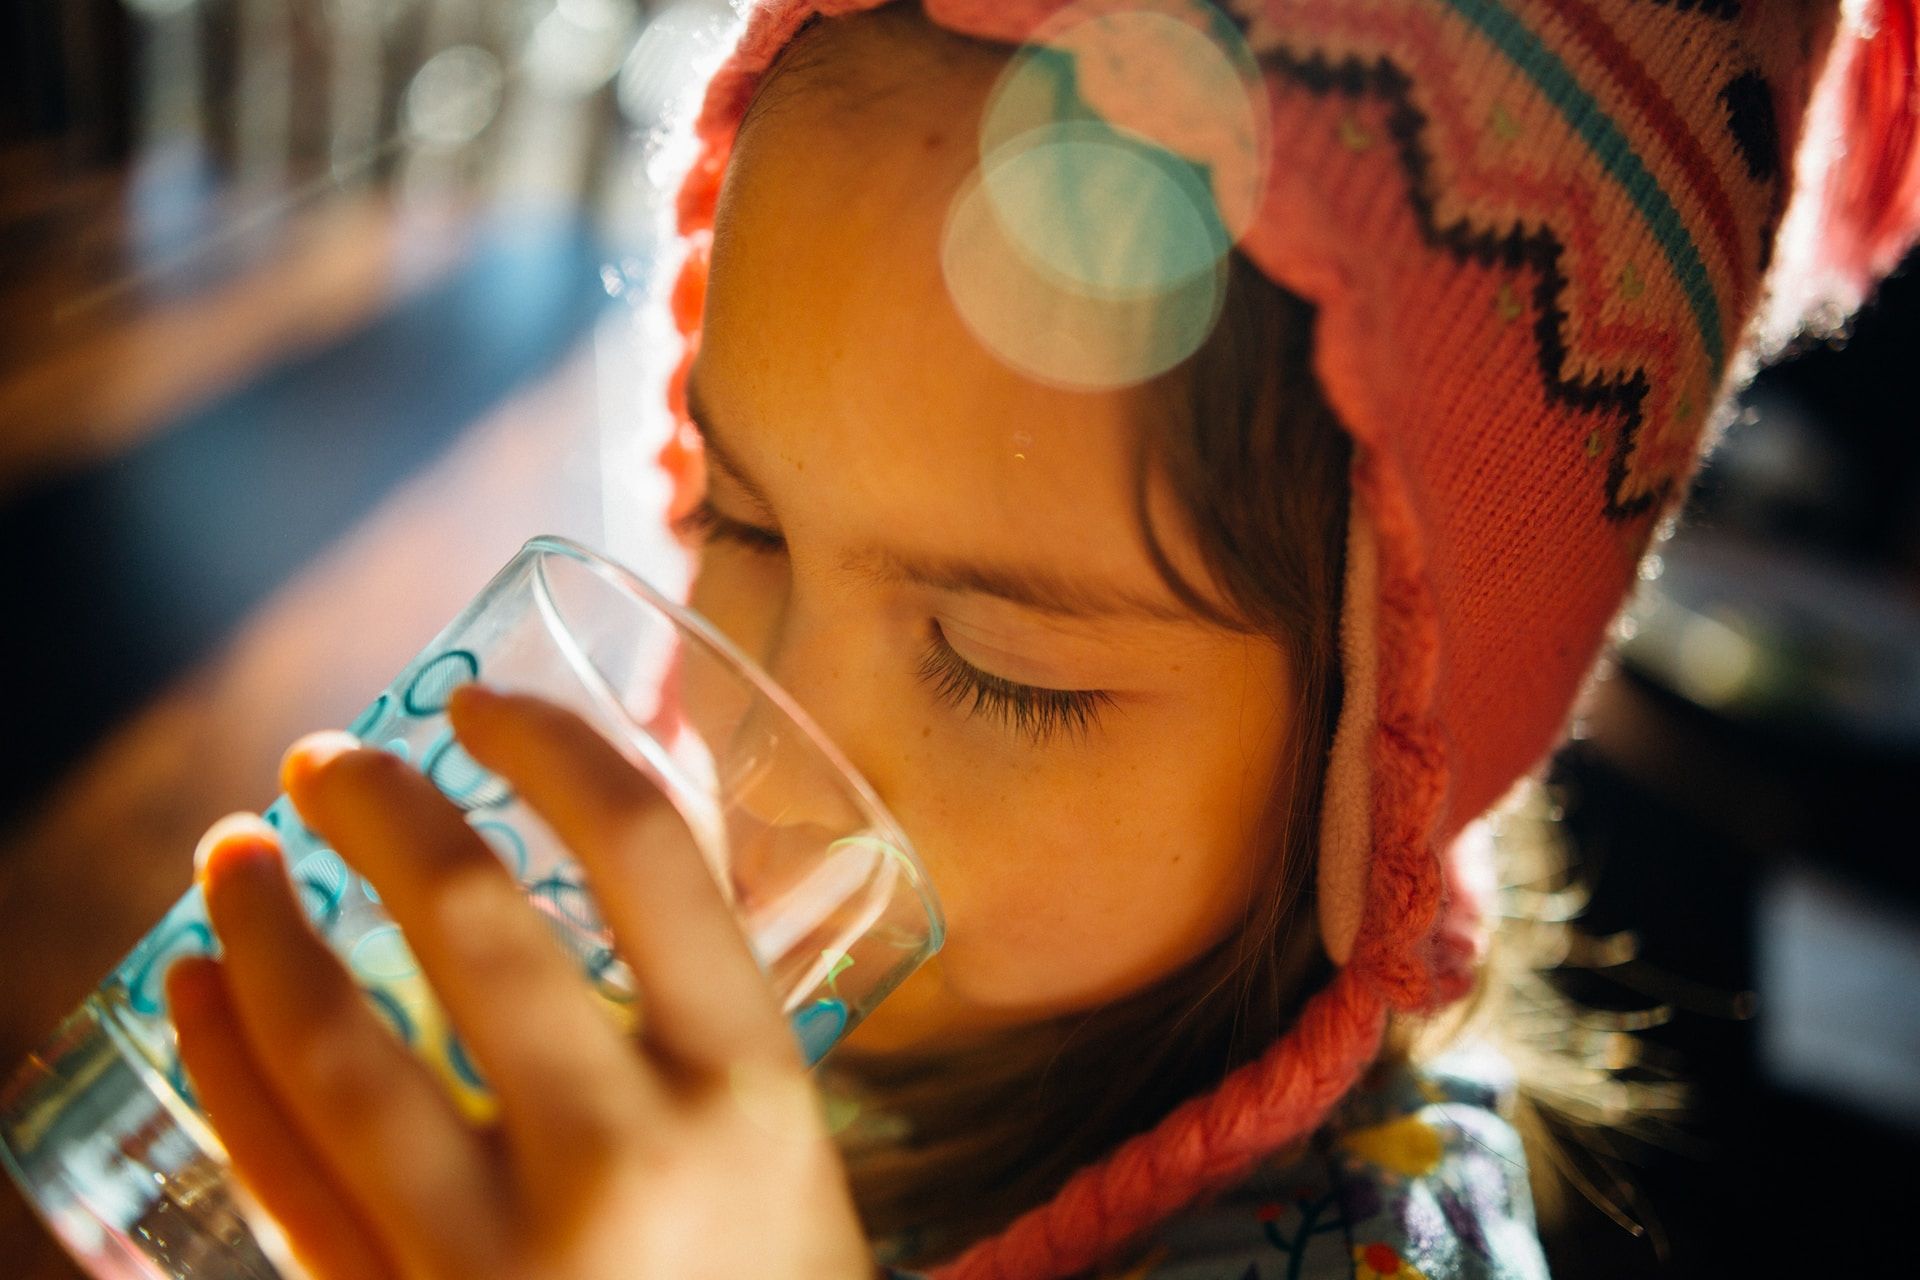 un enfant portant un bonnet péruvien est en train de boire un verre d'eau - Photo de Johnny McClung sur https://unsplash.com/fr/photos/uDM99xirqI4